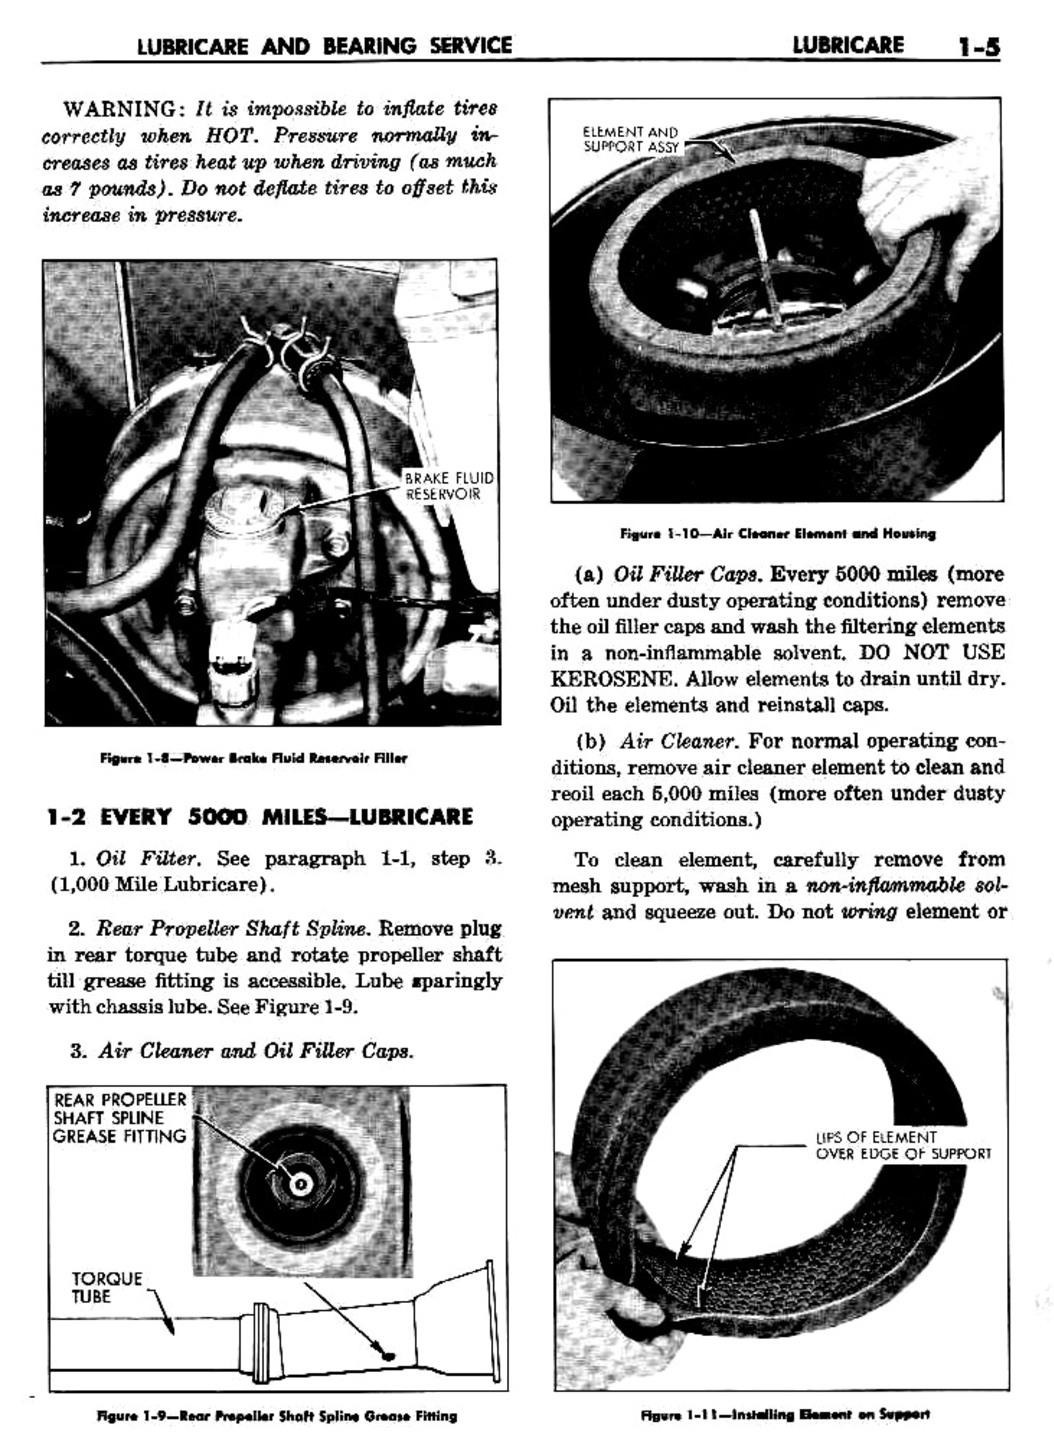 n_02 1960 Buick Shop Manual - Lubricare-005-005.jpg